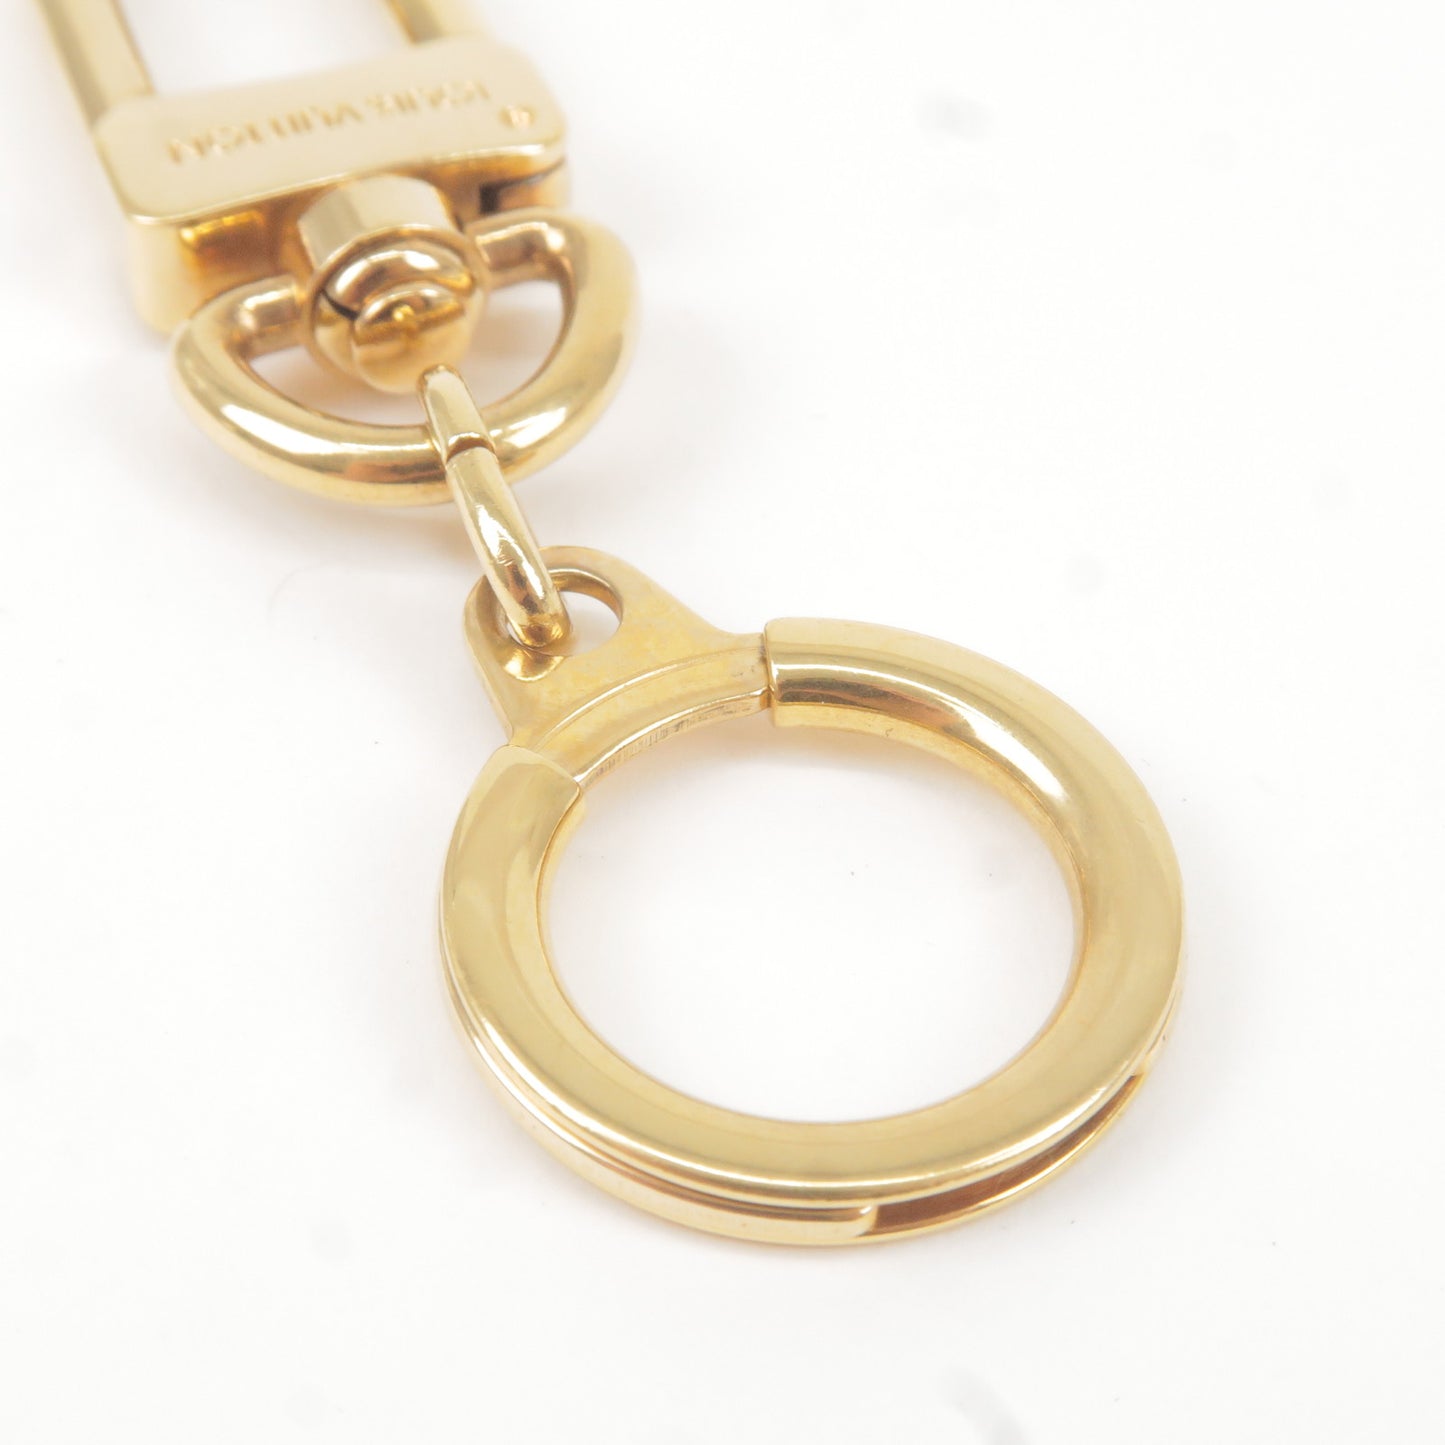 Louis Vuitton Ano Cles Key Chain Bag Chram Gold M62694